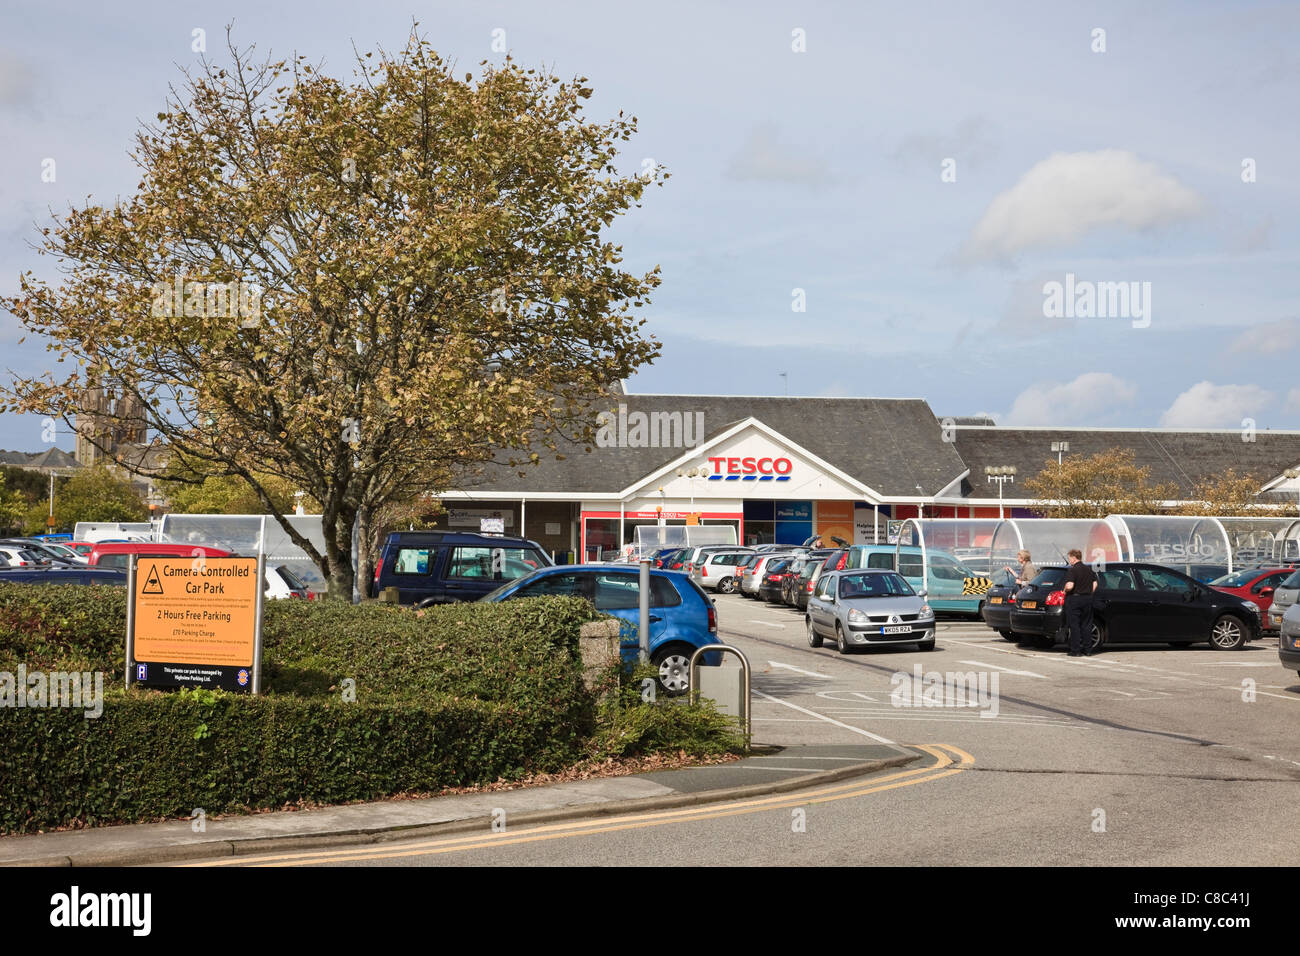 Negozio Tesco con vetture parcheggiate nel parcheggio. Truro, Cornwall, Inghilterra, Regno Unito, Gran Bretagna. Foto Stock